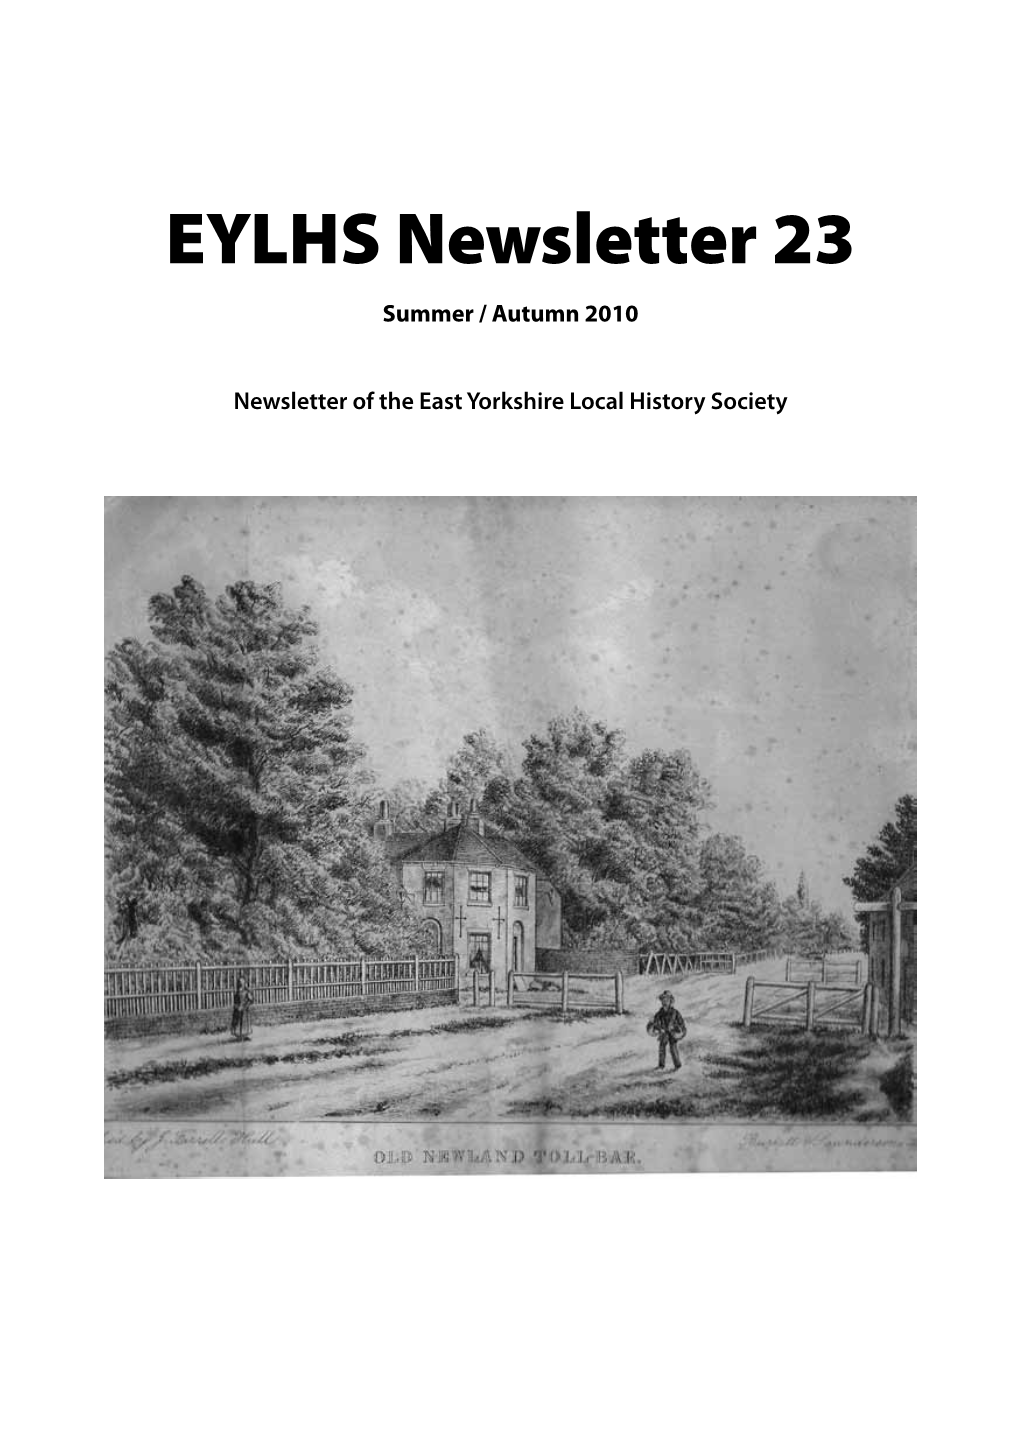 EYLHS Newsletter 23 Summer / Autumn 2010